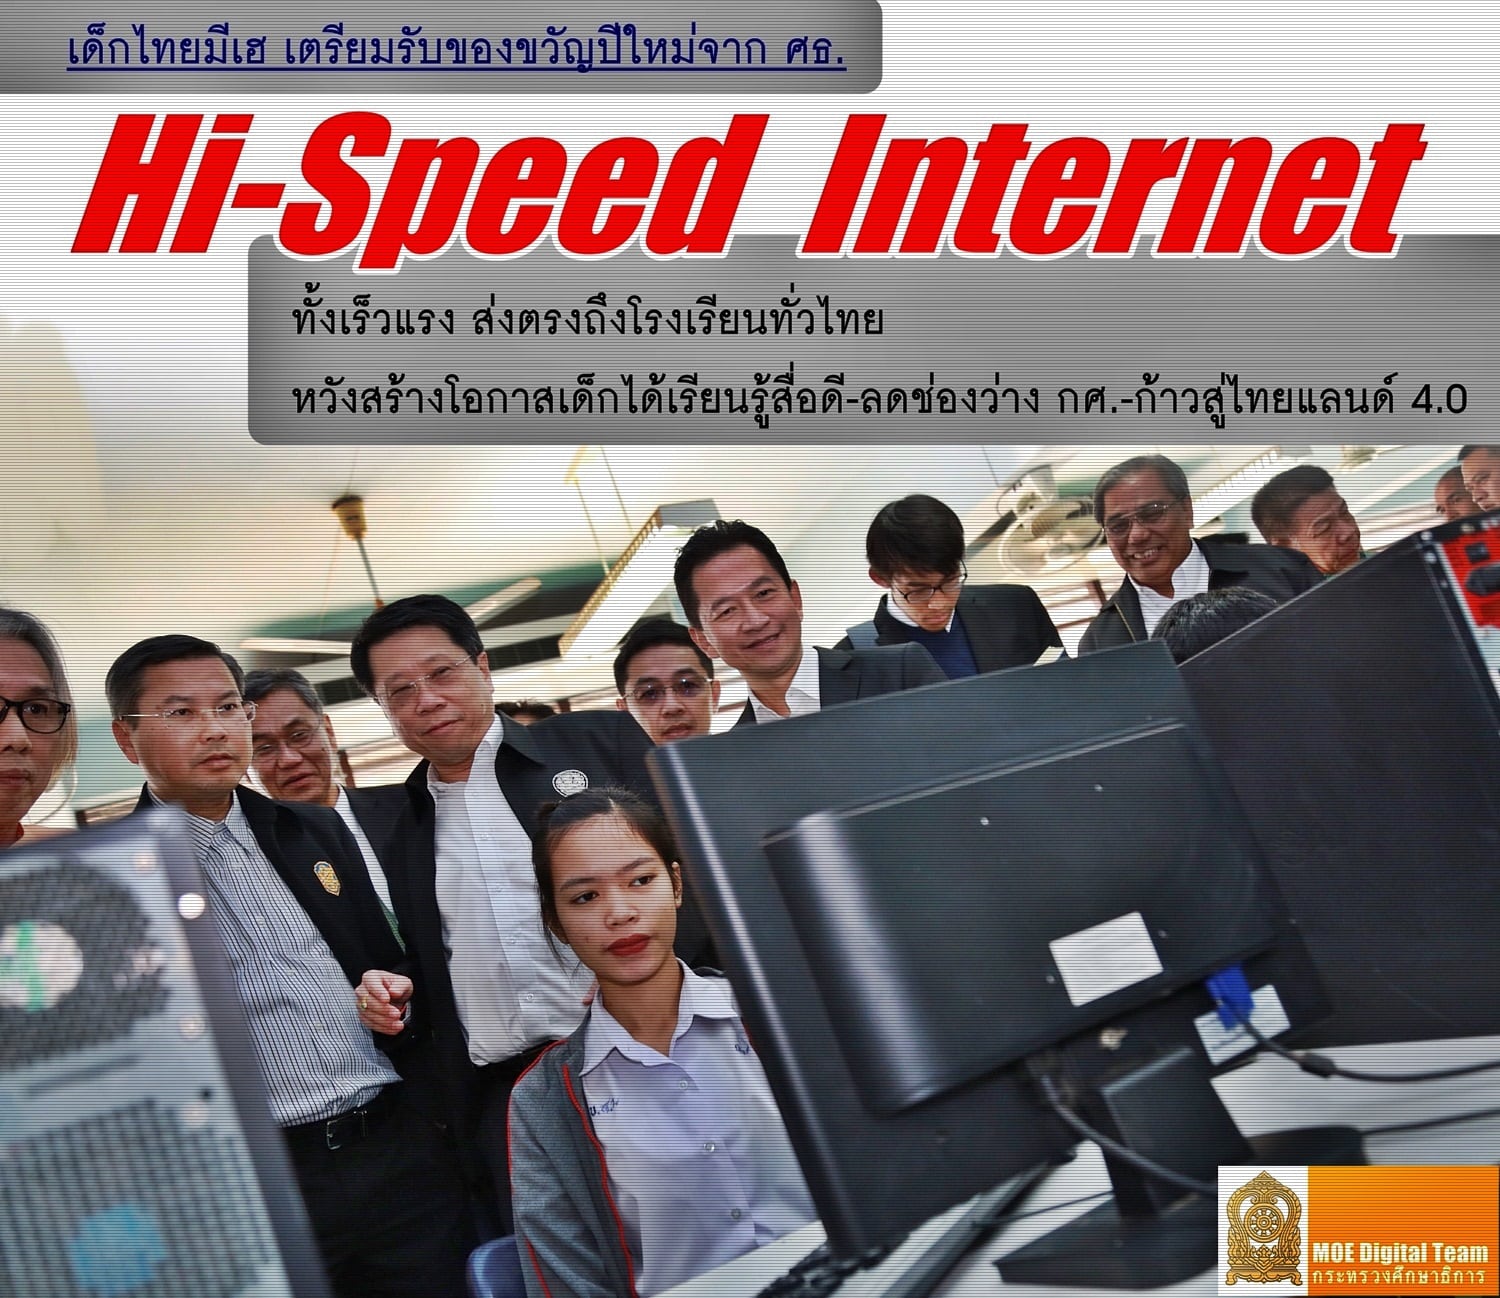 เด็กไทยมีเฮ เตรียมรับของขวัญปีใหม่จาก ศธ."Hi-Speed Internet" ทั้งเร็วแรงส่งตรงถึงโรงเรียนทั่วไทย